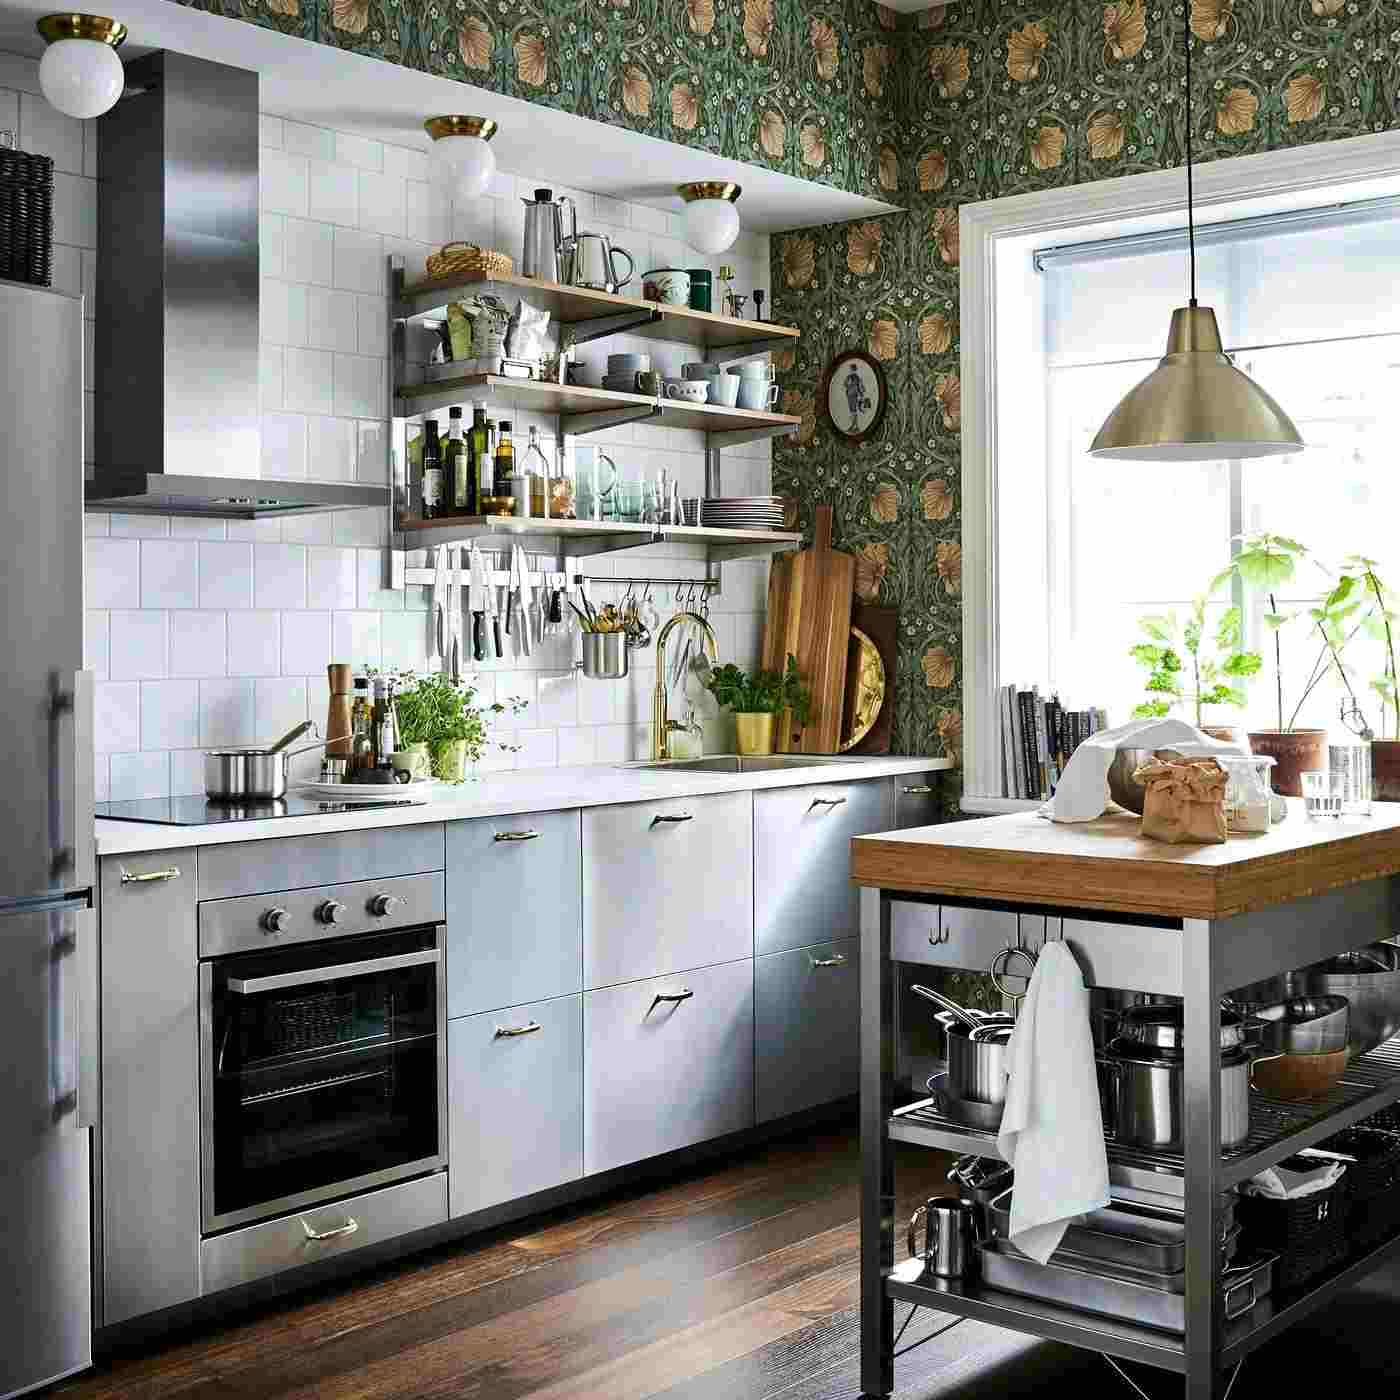 Kleine Küche rustikal gestalten mit Tapeten mit bunten Mustern und Wandregalen